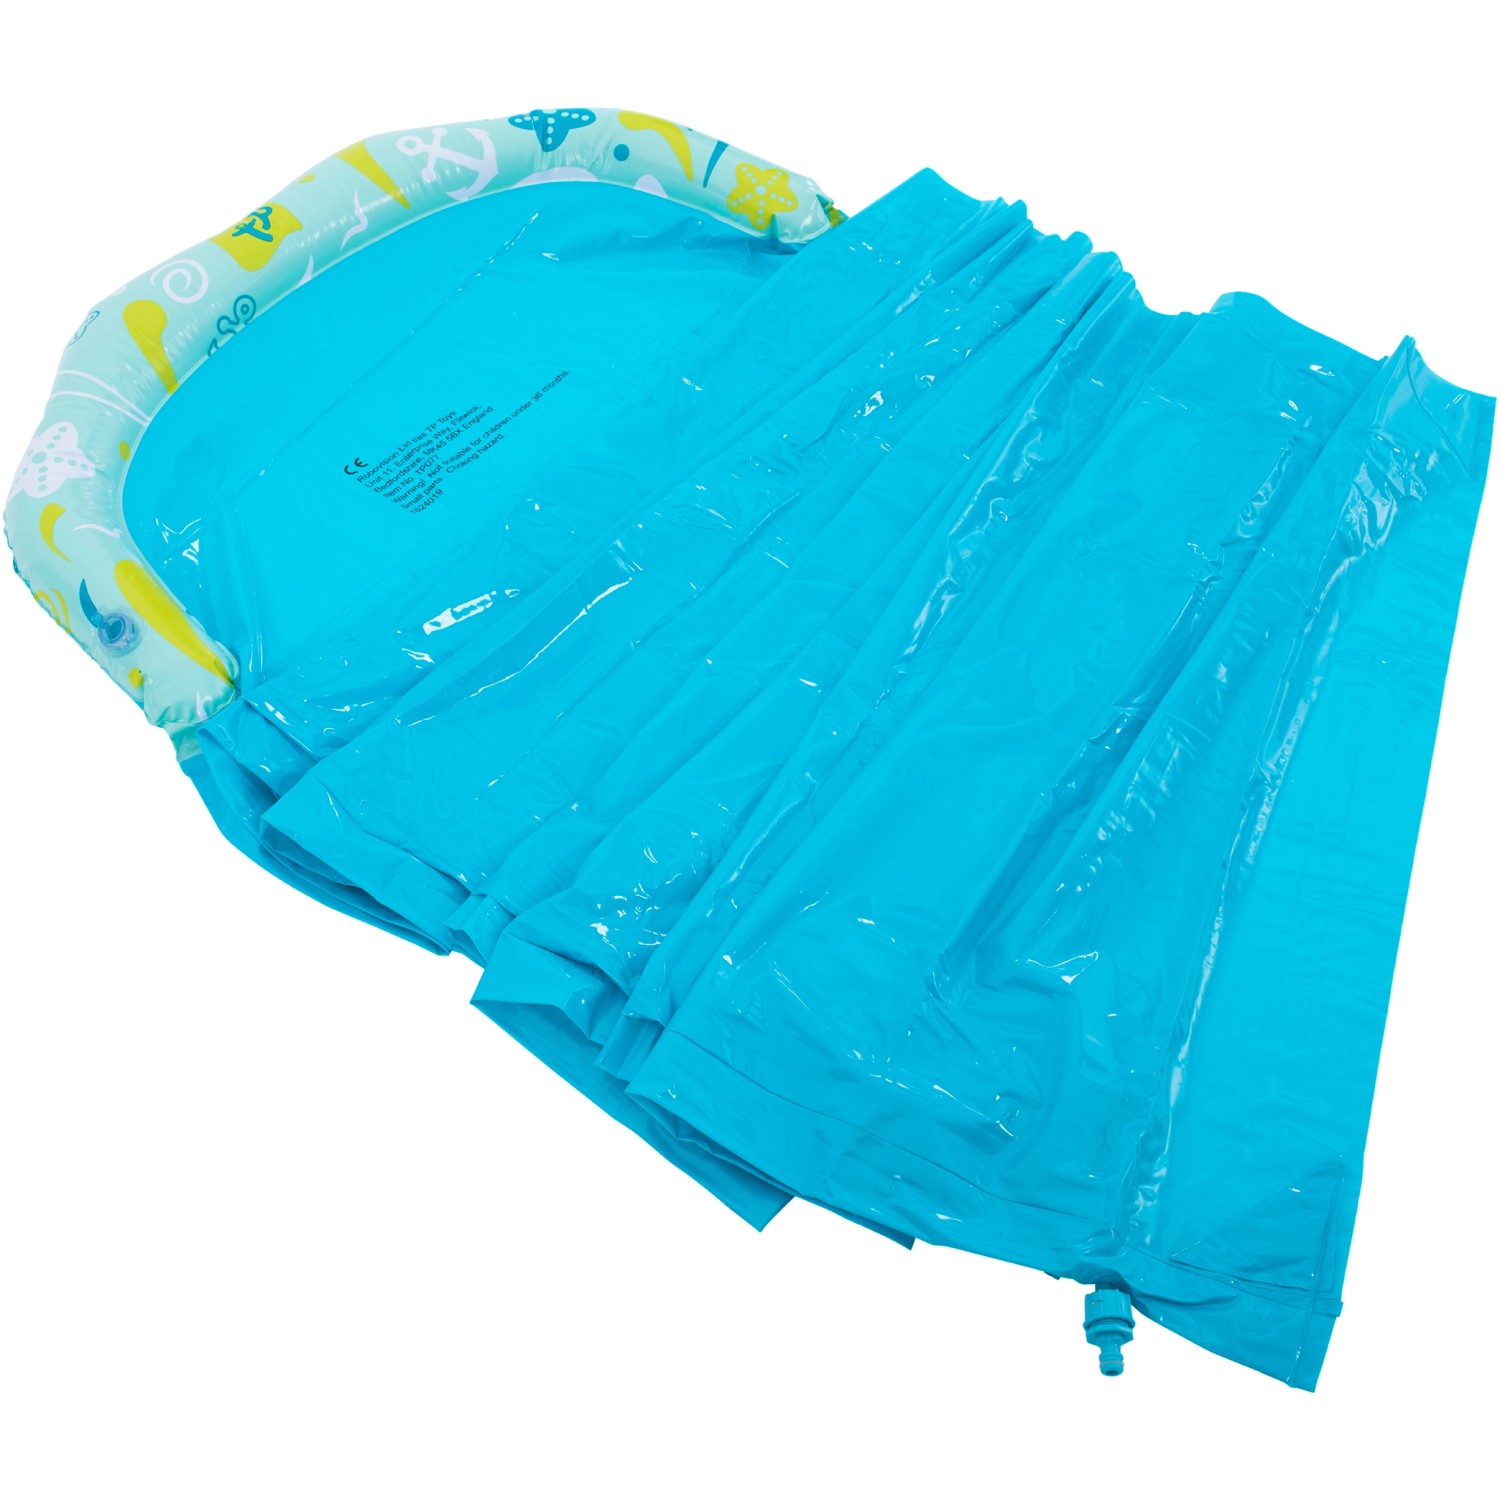 Toys Wasserrutsche Blau TP 6,15 OBI kaufen bei Lang m